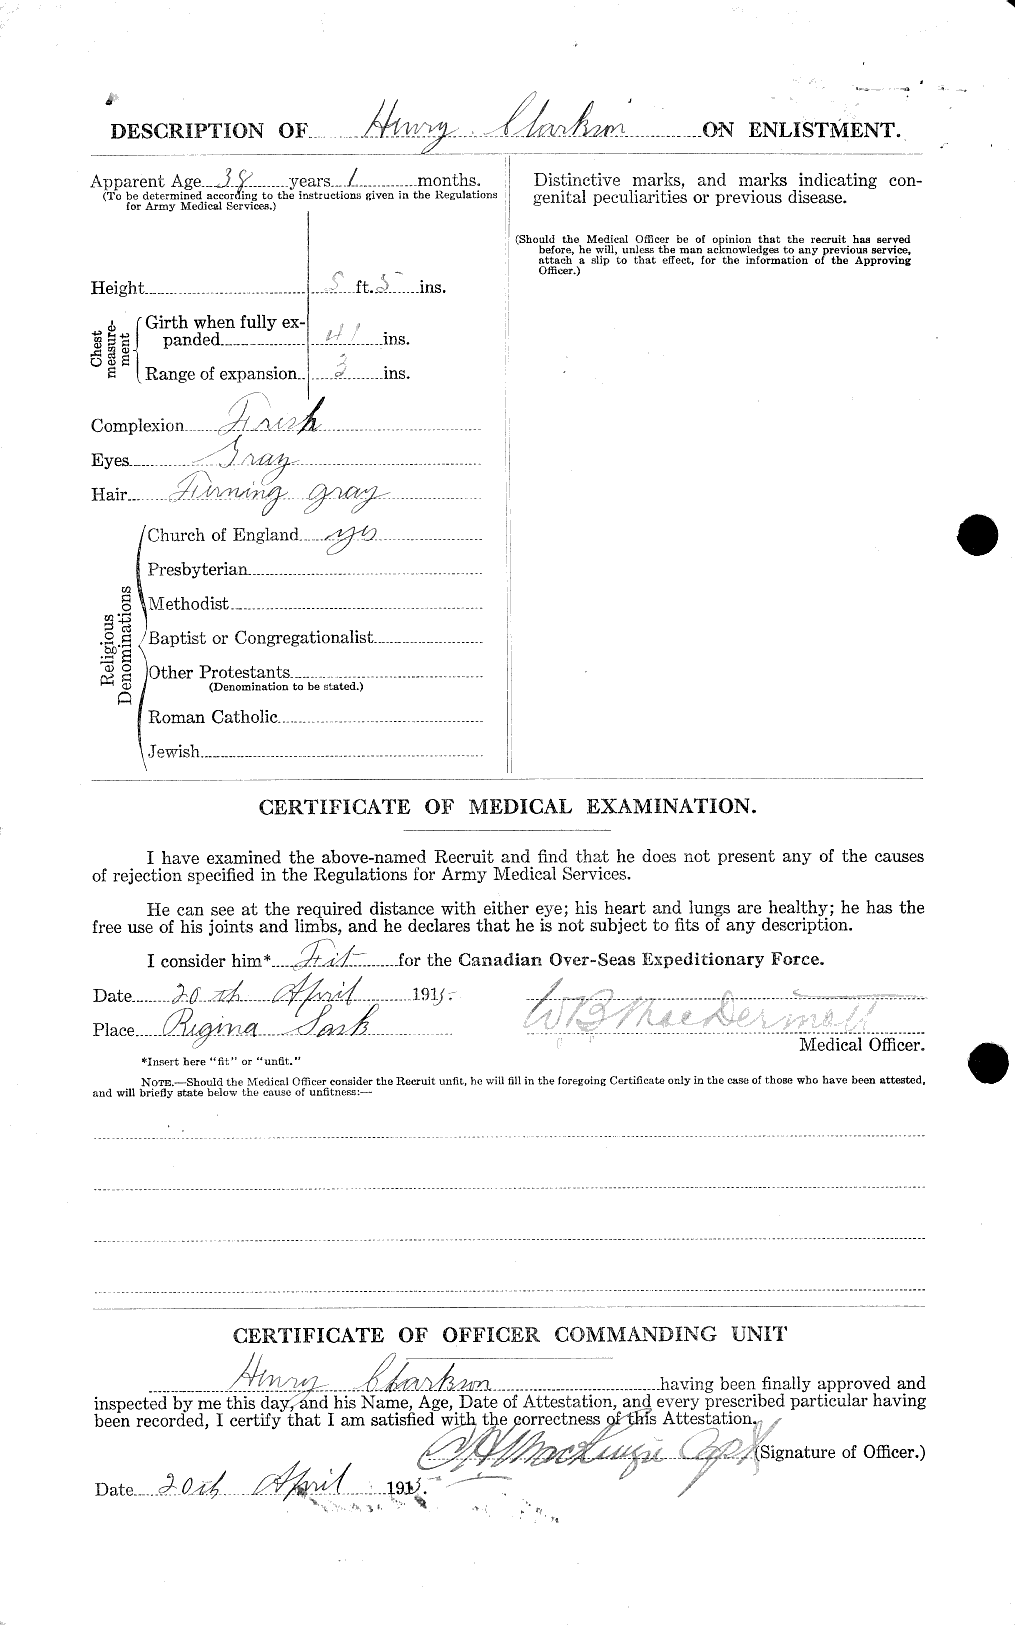 Dossiers du Personnel de la Première Guerre mondiale - CEC 021439b